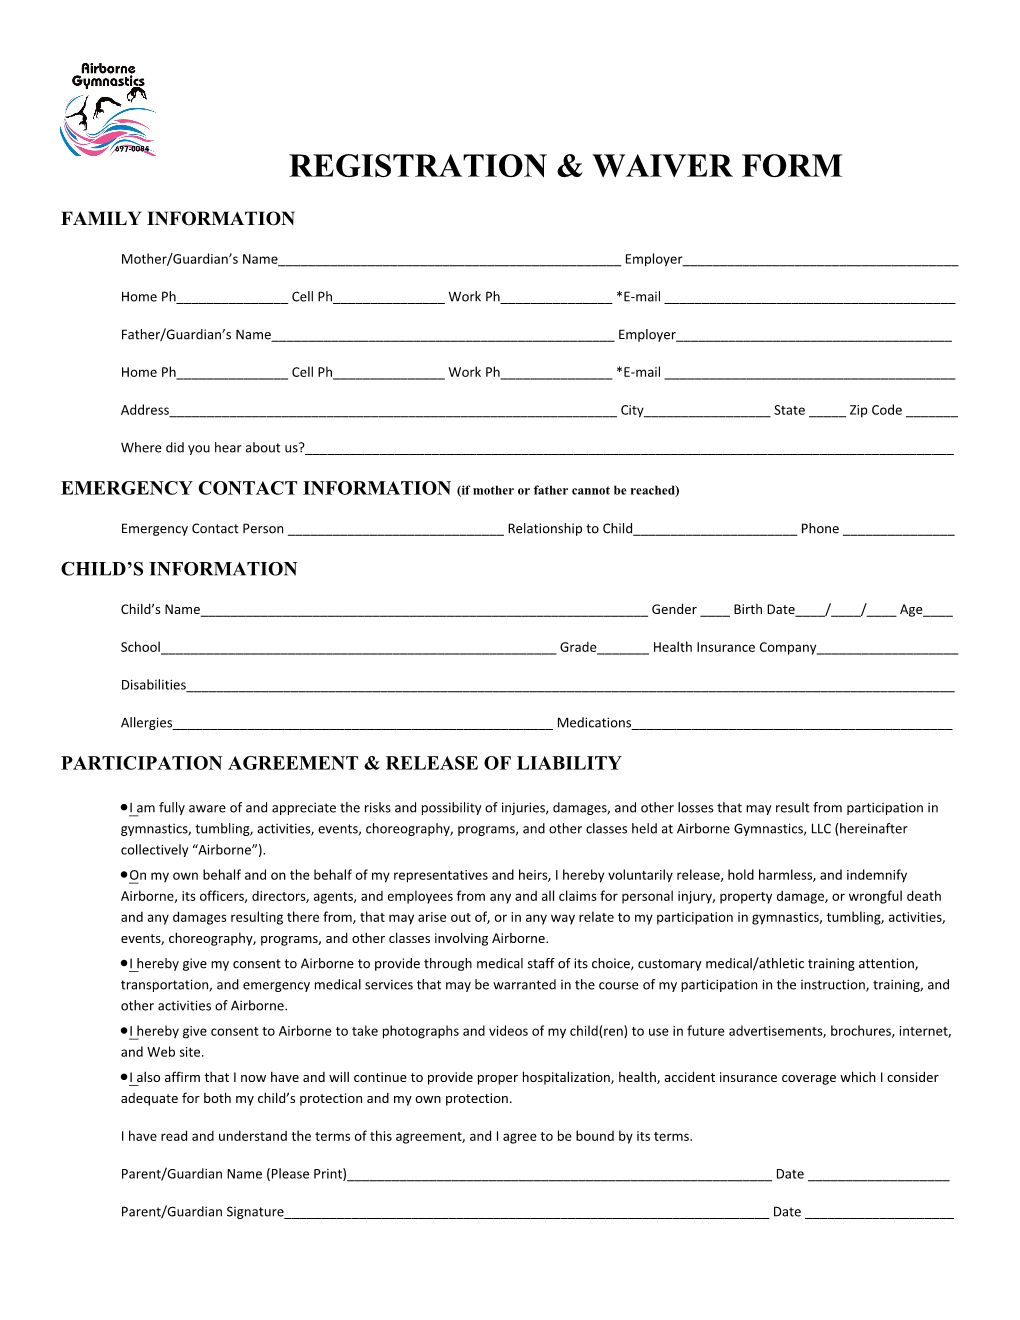 Registration & Waiver Form